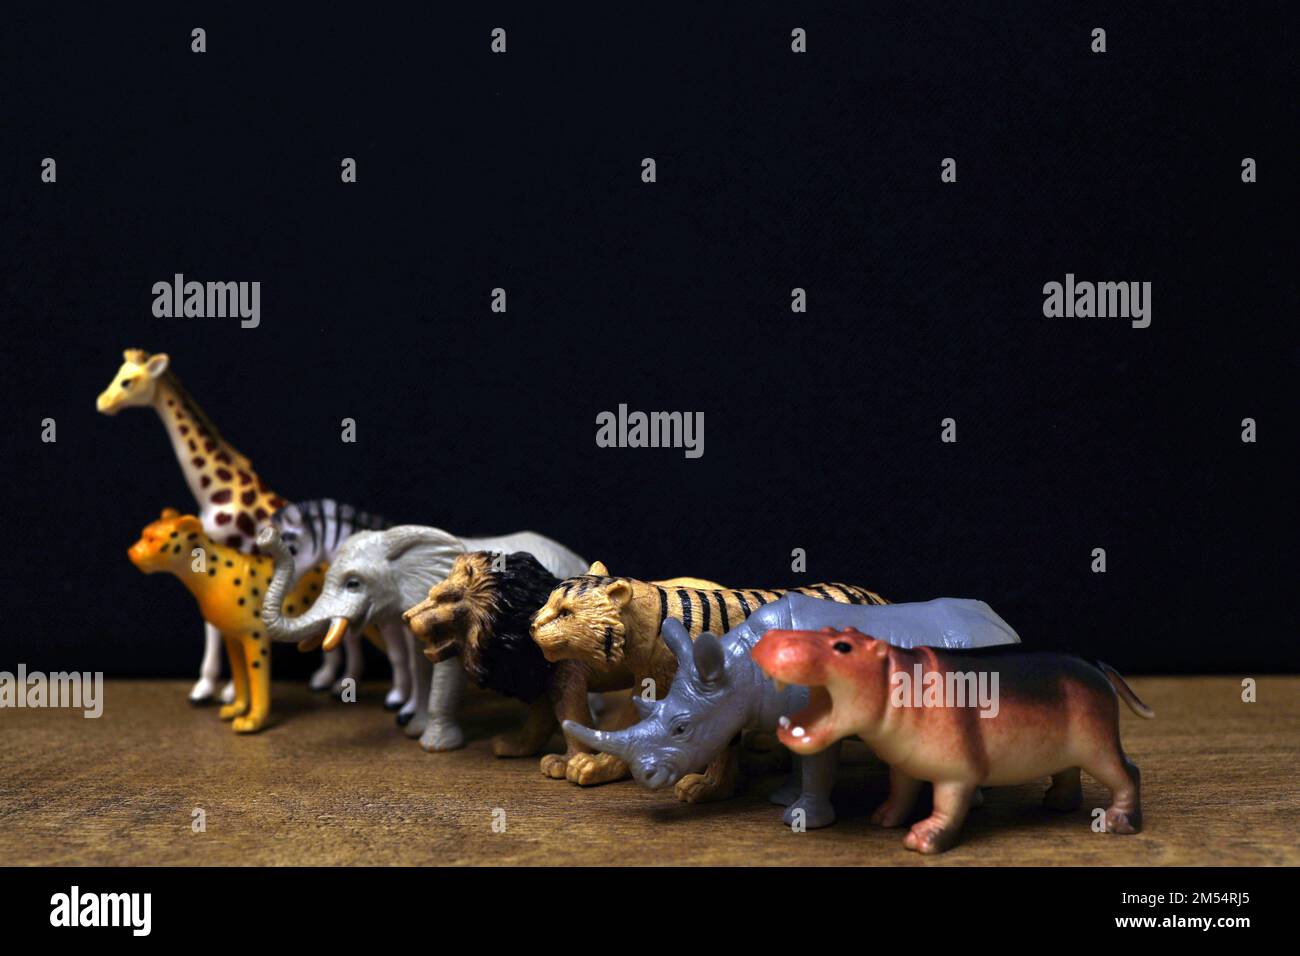 Animales juguetes fotografías e imágenes de alta resolución - Alamy